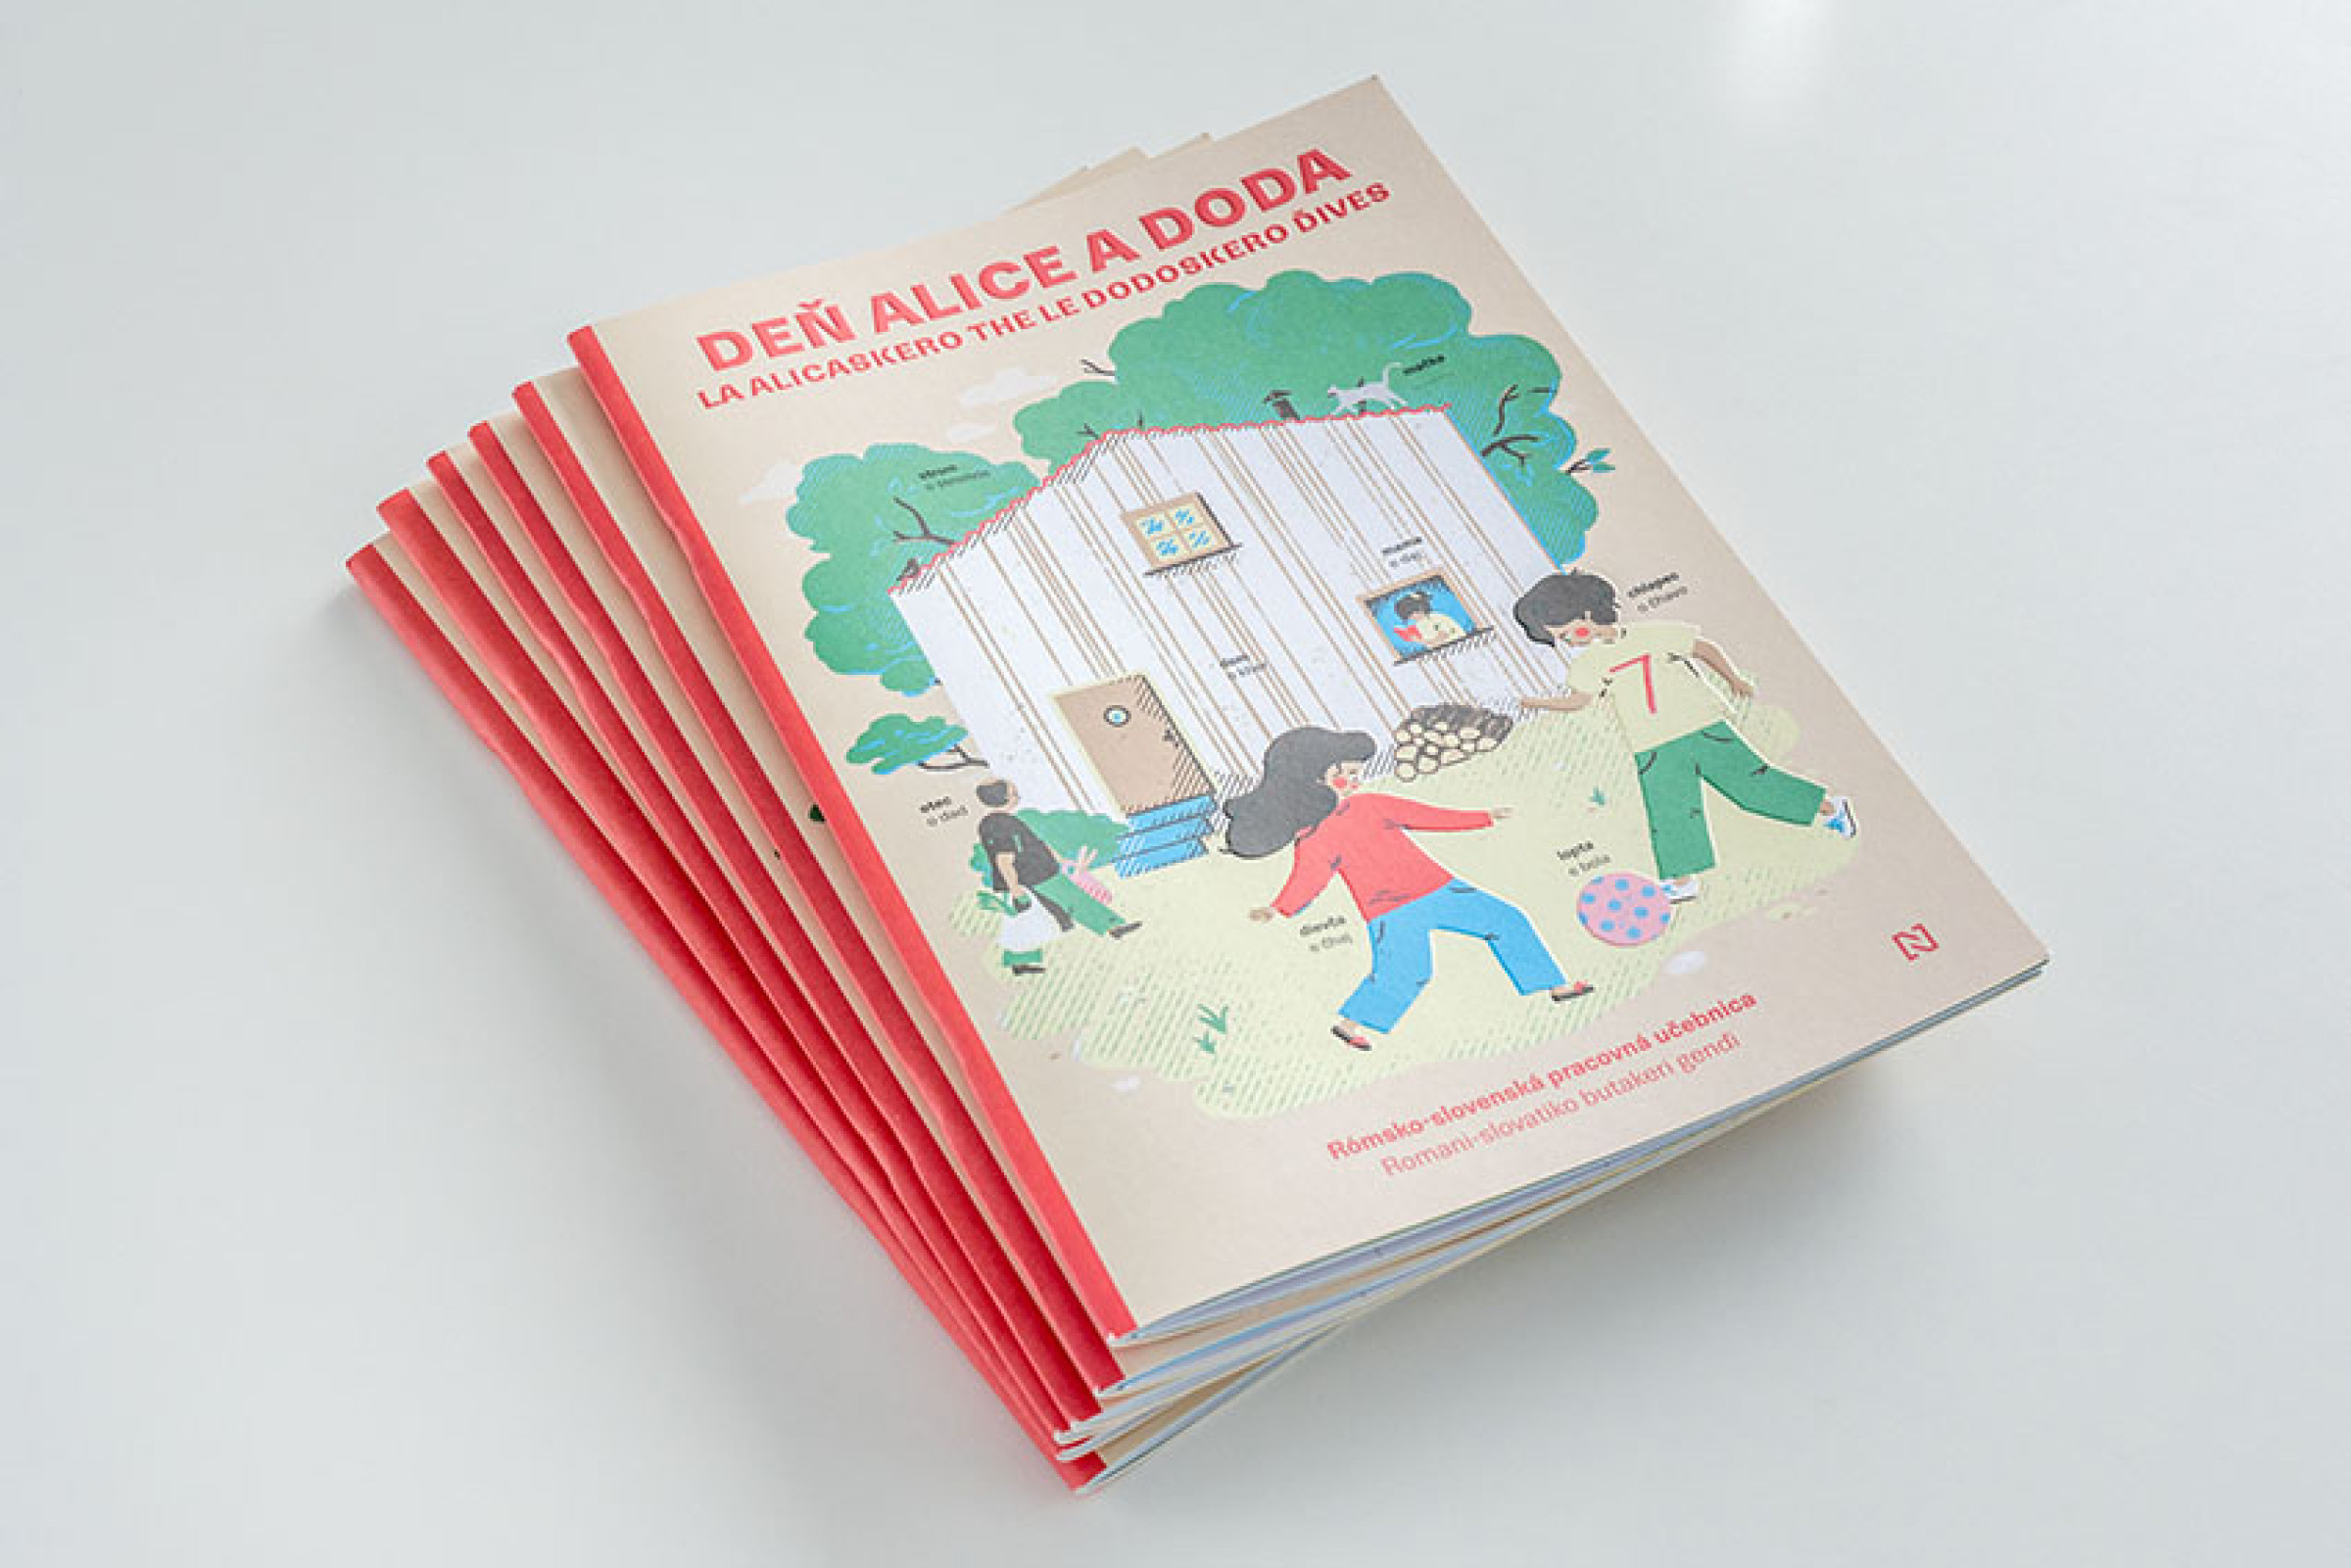 Deň Alice a Doda. Rómsko-slovenská učebnica (balík 20 ks)